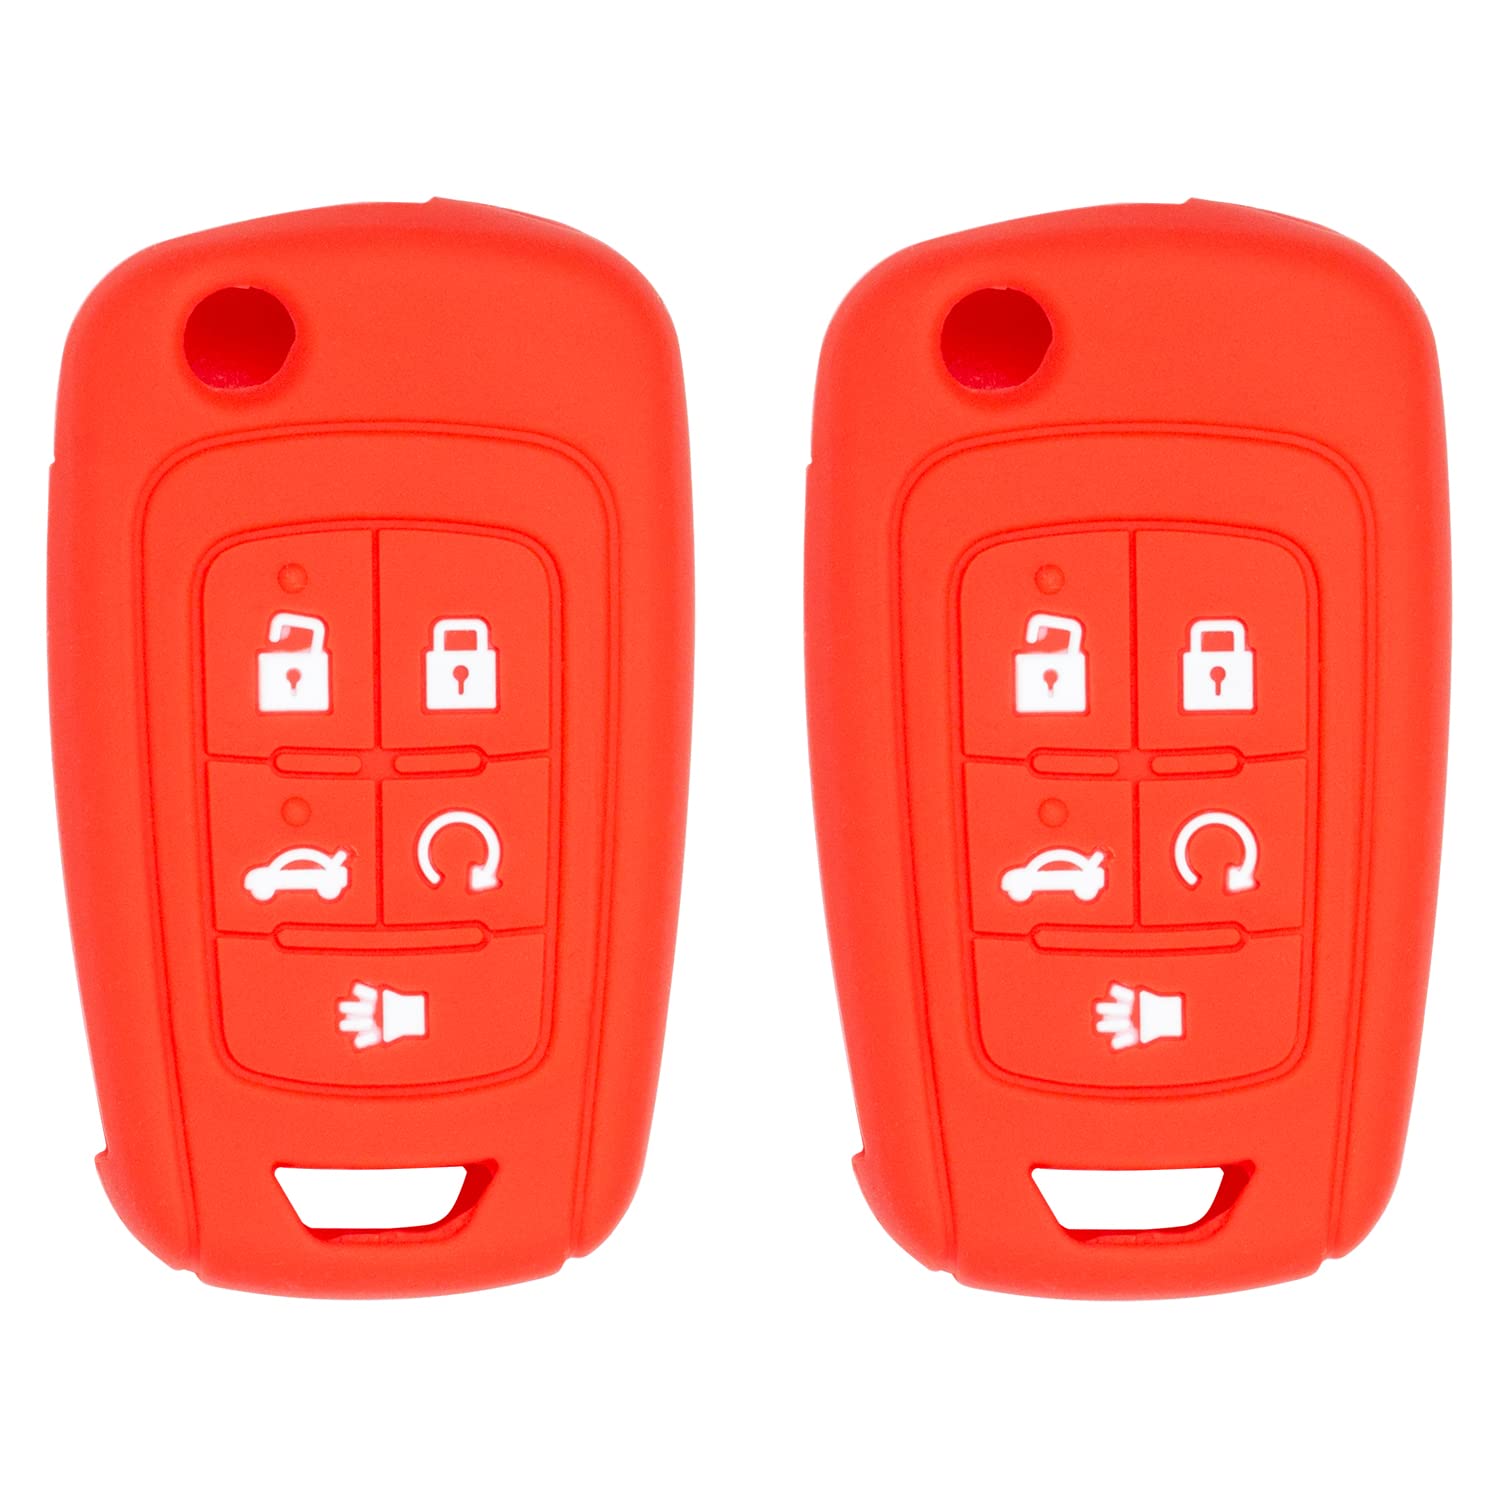 Silicone case for Flip Key 5 Button for Cruze Equinox Impala Malibu Sonic Terrain Lacrosse Regal Verano Encore Allure (Double Red)